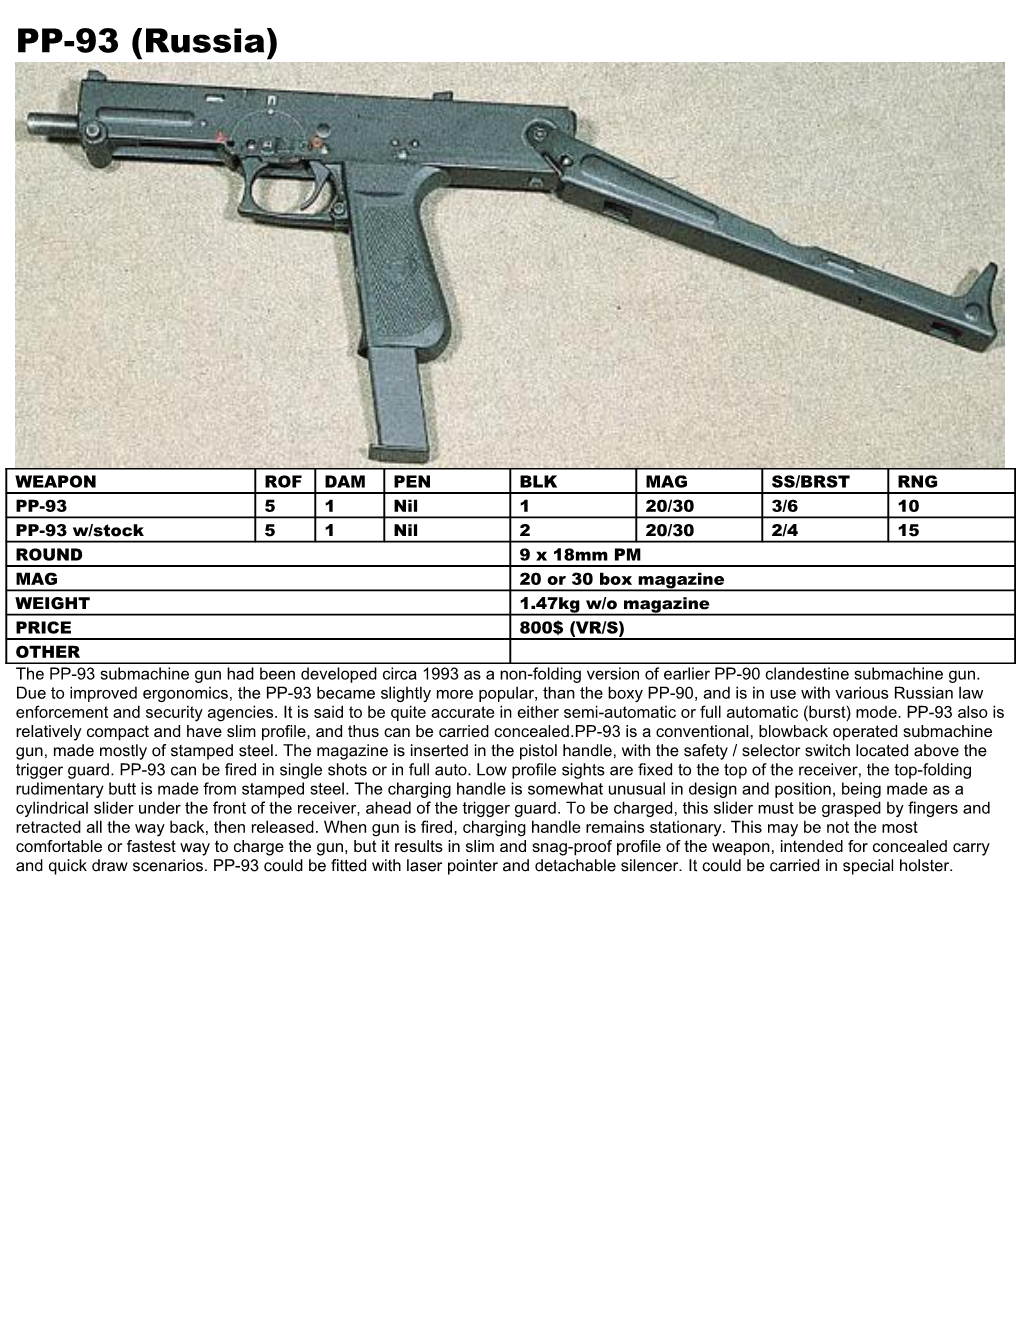 The PP-93 Submachine Gun Had Been Developed Circa 1993 As a Non-Folding Version of Earlier